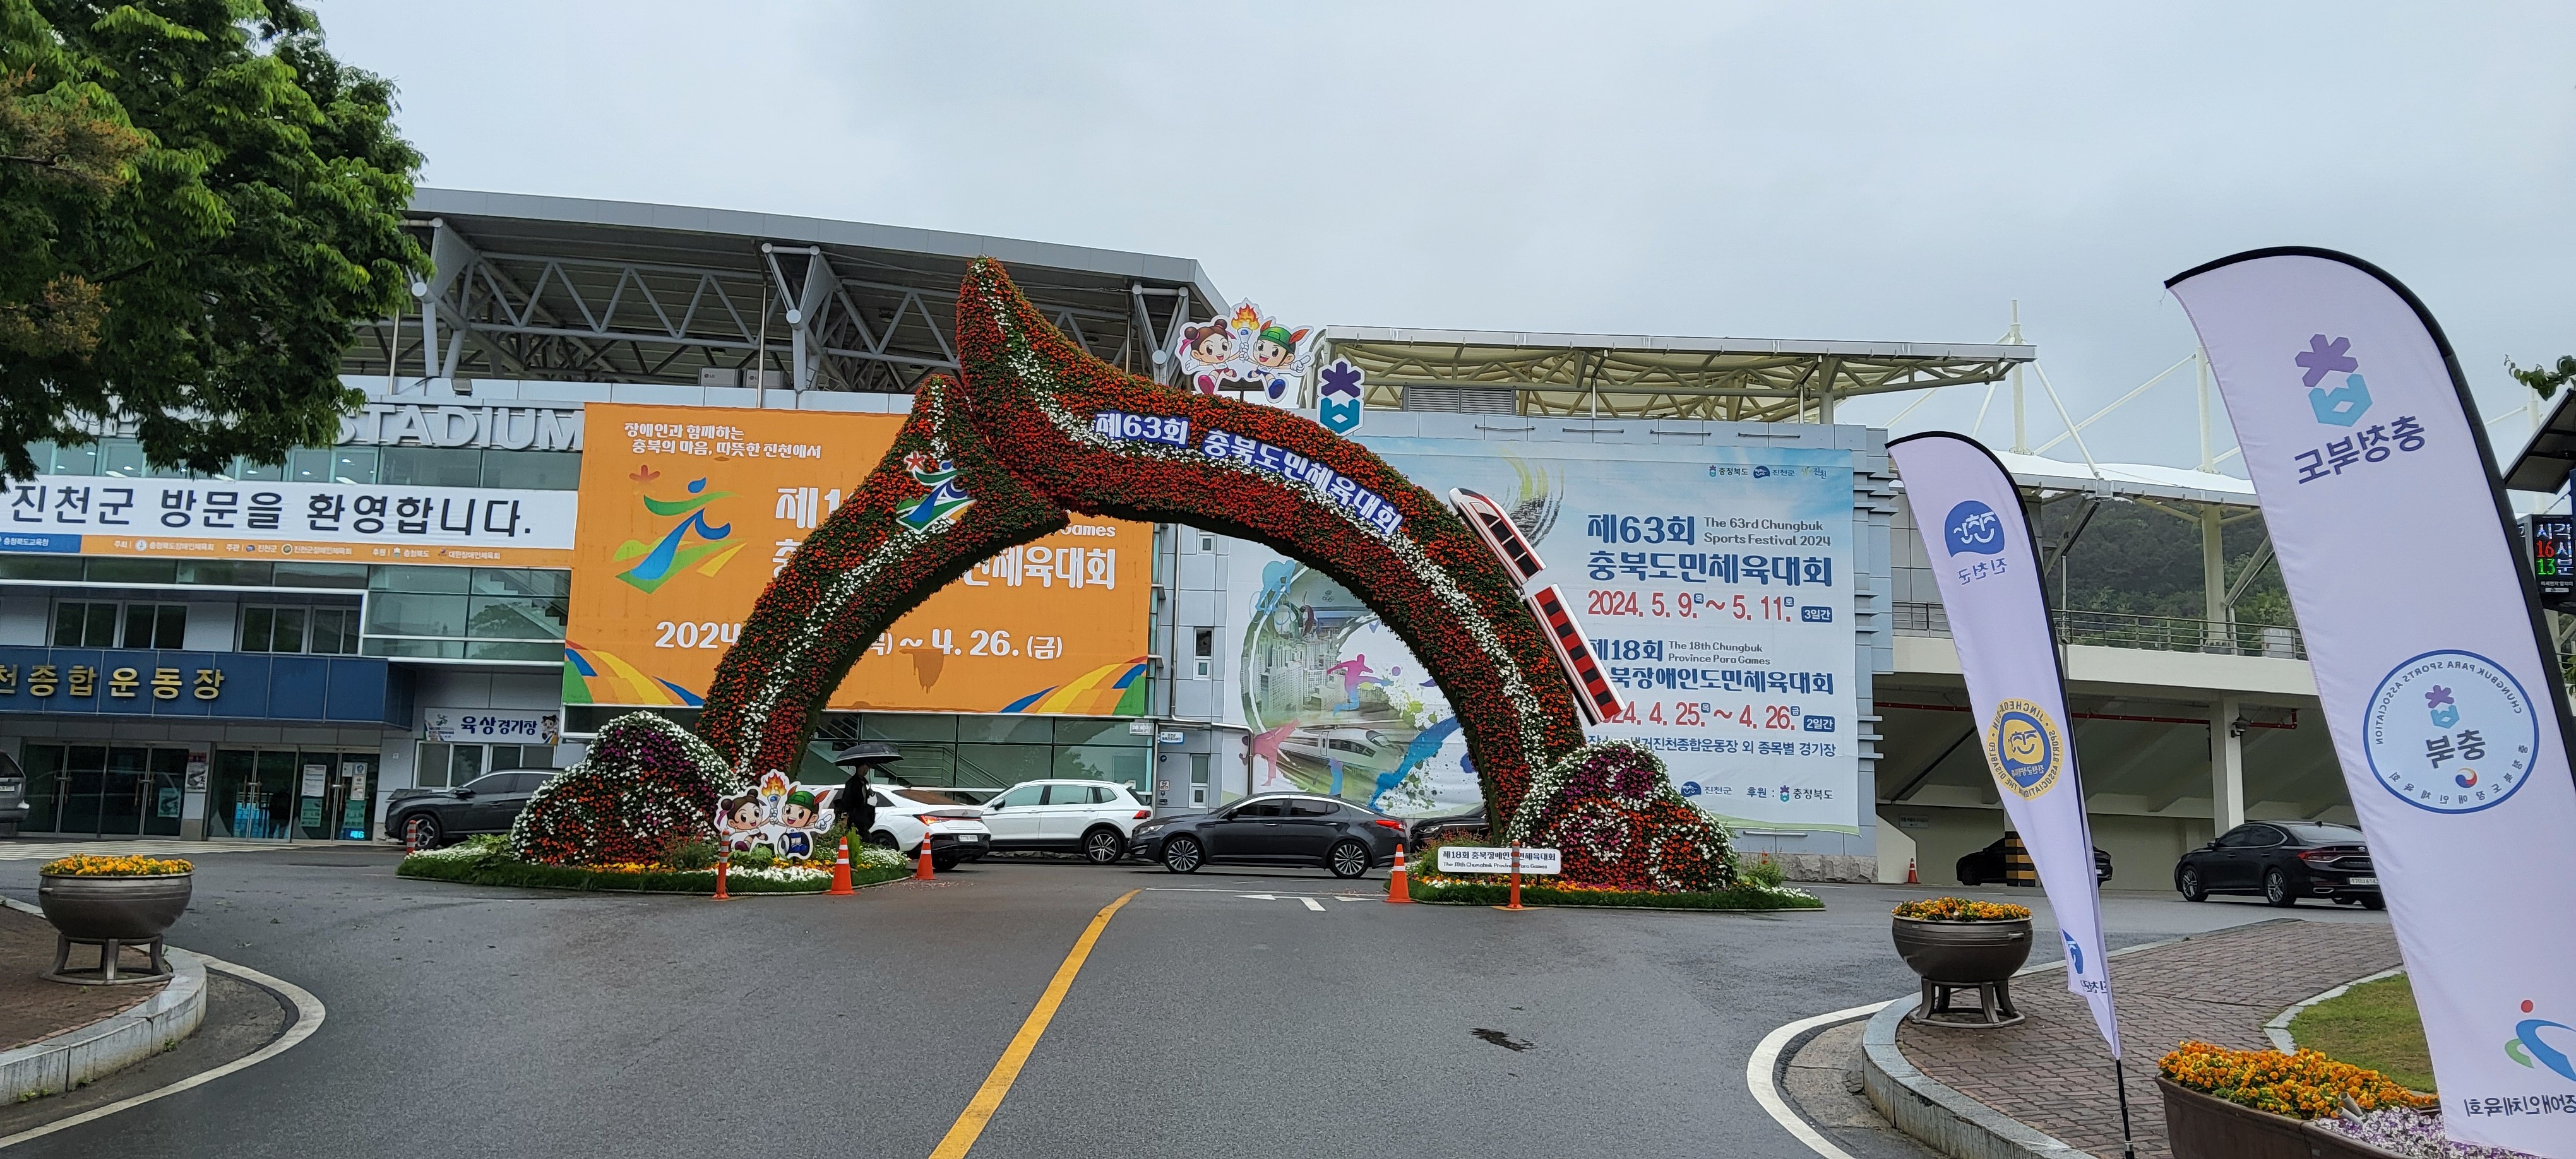 제 63회 충북 도민 체육대회 홍보 사진 2탄 -cboard